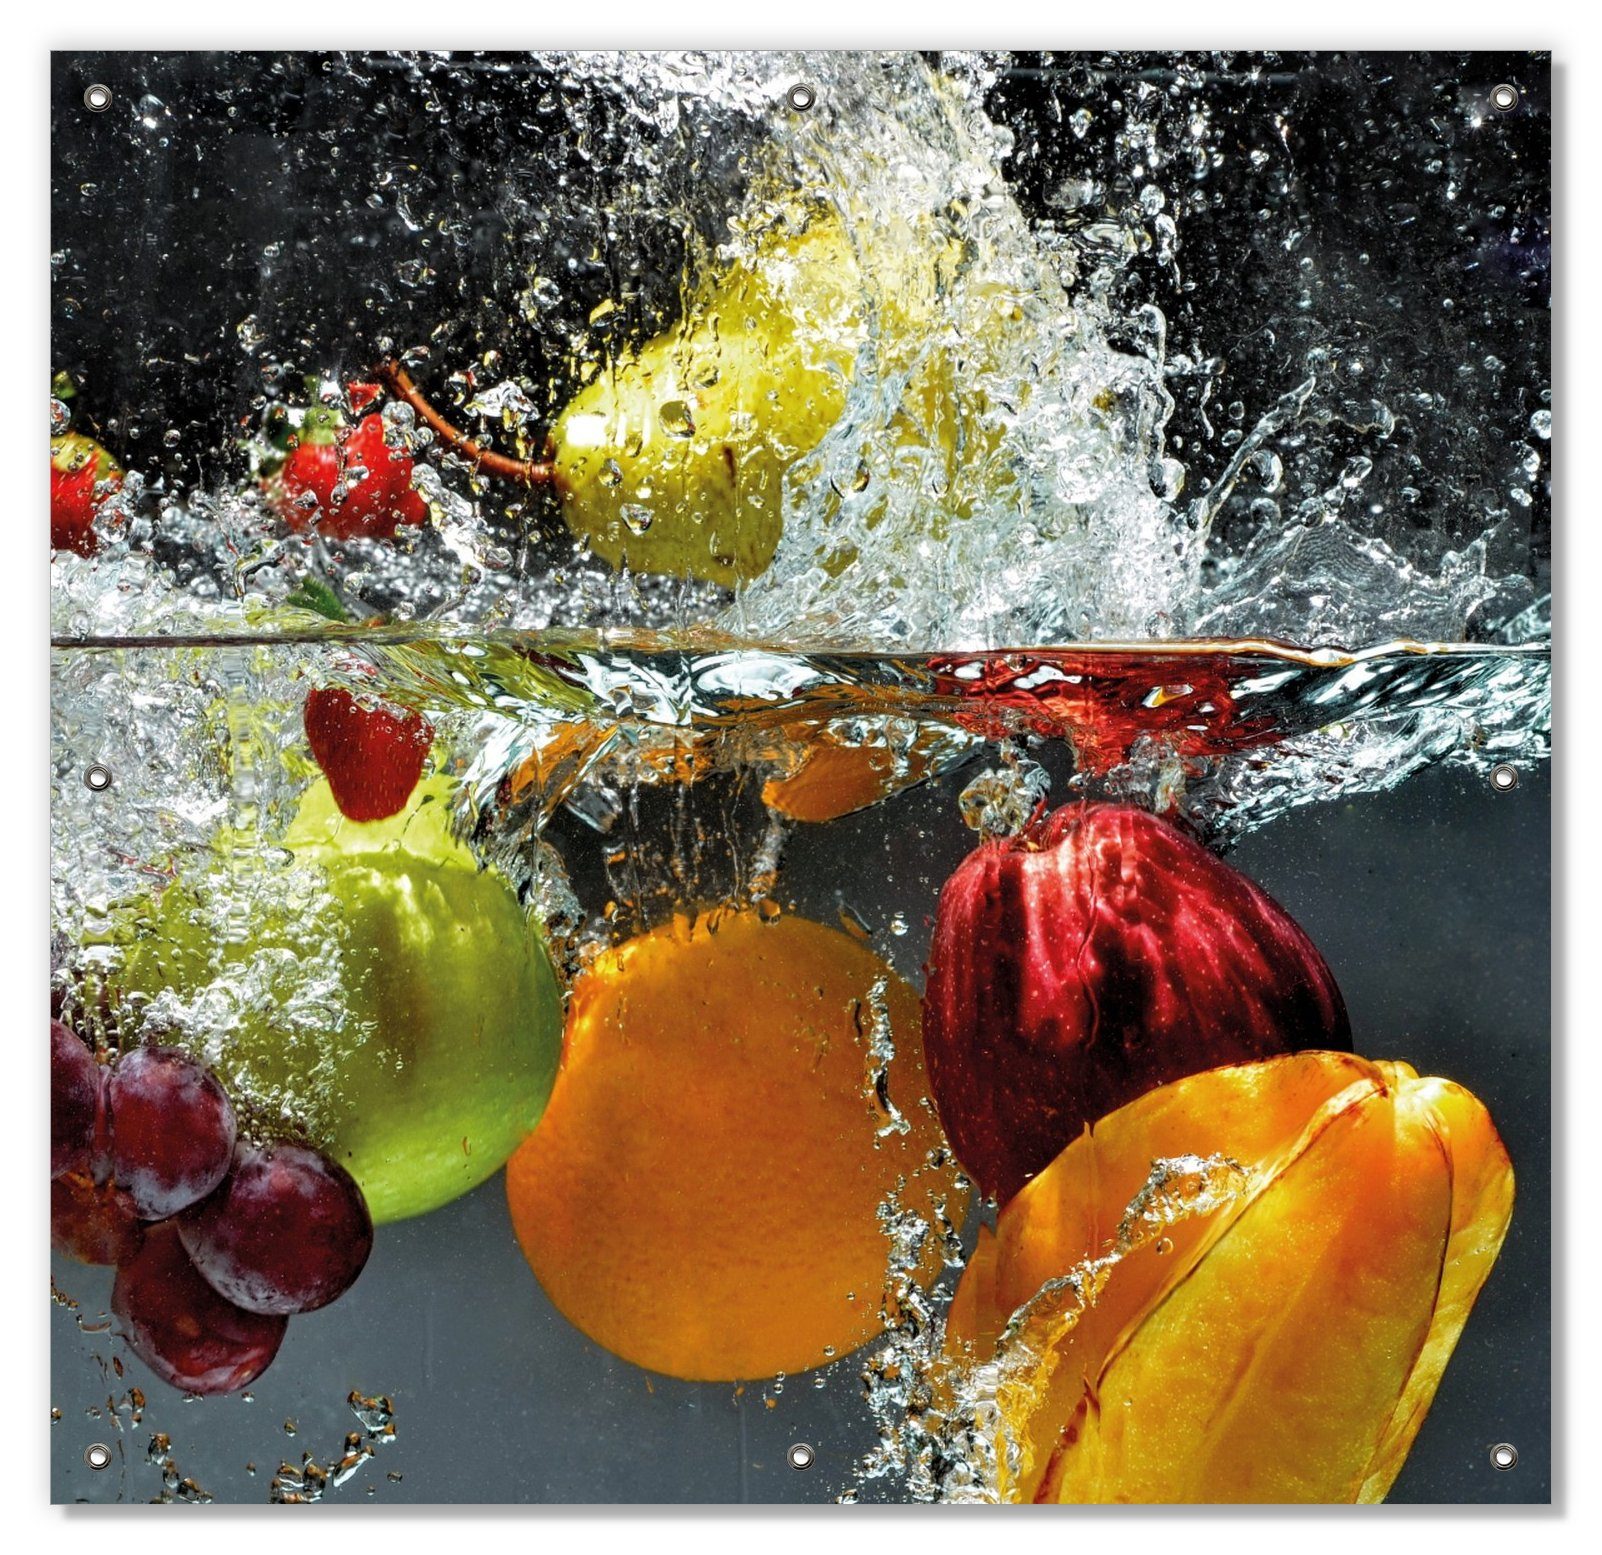 mit Fruits, Wallario, Sonnenschutz und Saugnäpfen, unter und im Splashing - Früchte wiederablösbar blickdicht, Wasser wiederverwendbar